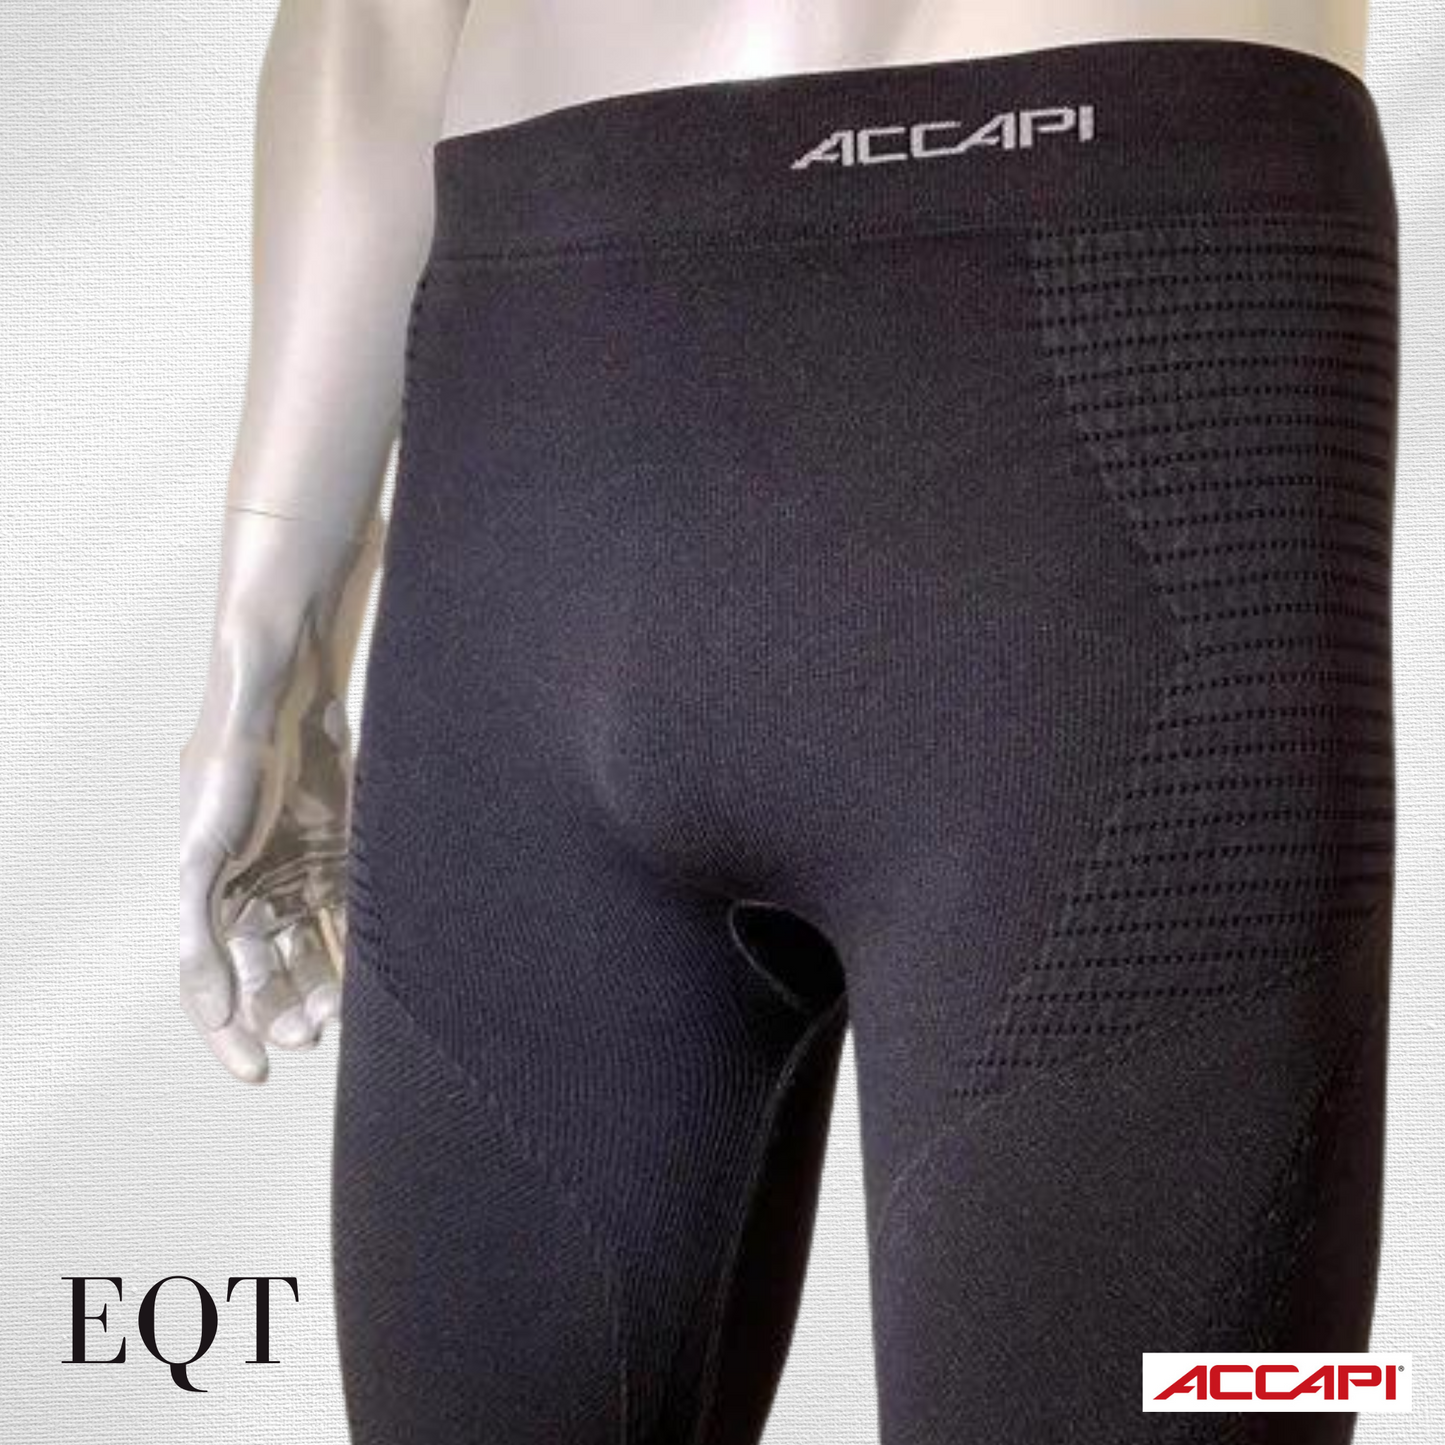 ACCAPI Accapi EQT SYNERGY Pants Men's EA803 Black